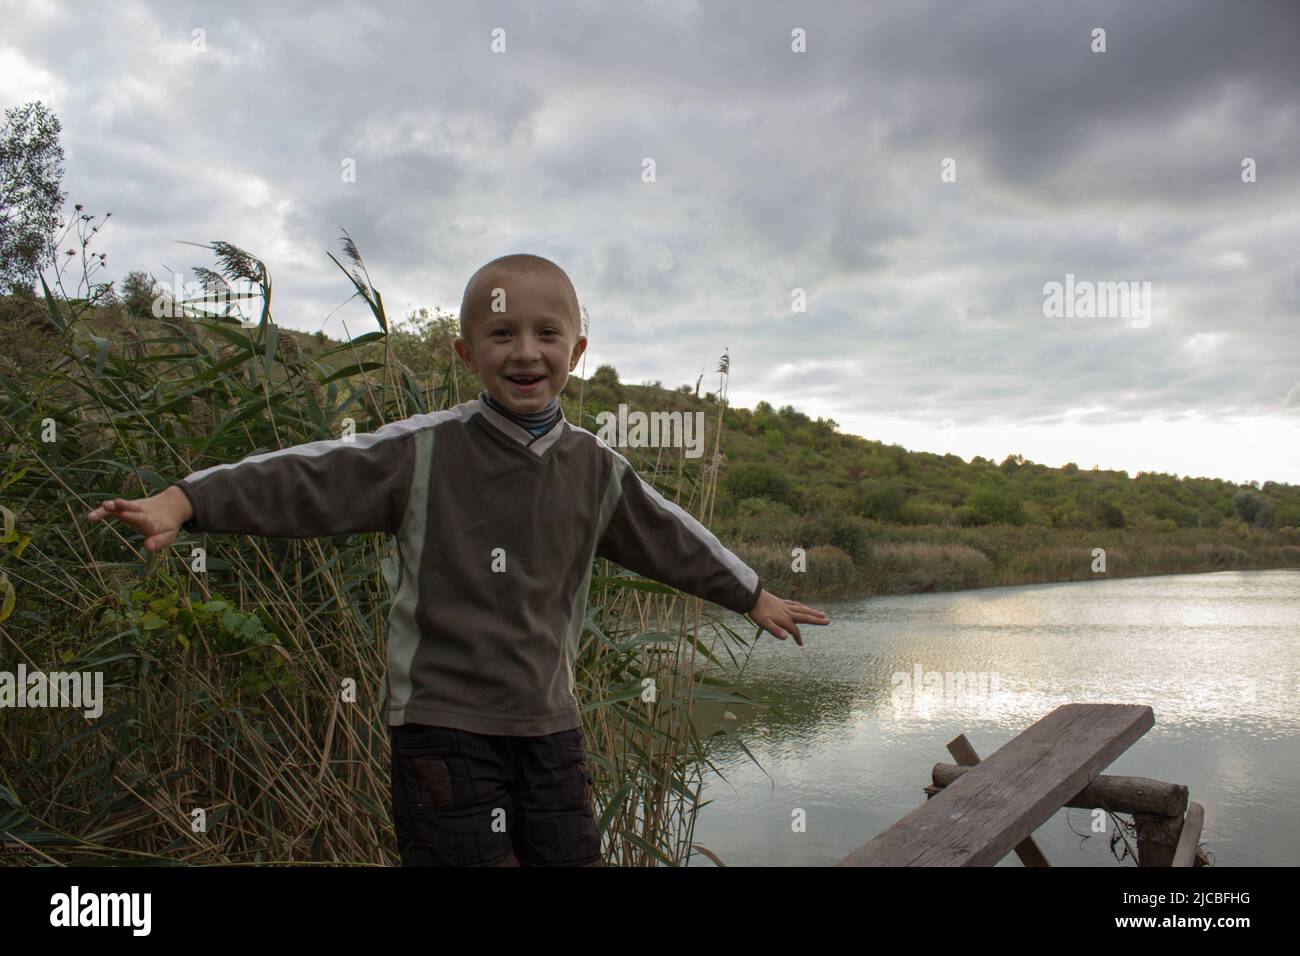 Die Hände auf der Seite des Jungen lachten im Herbst am Ufer des Sees Stockfoto